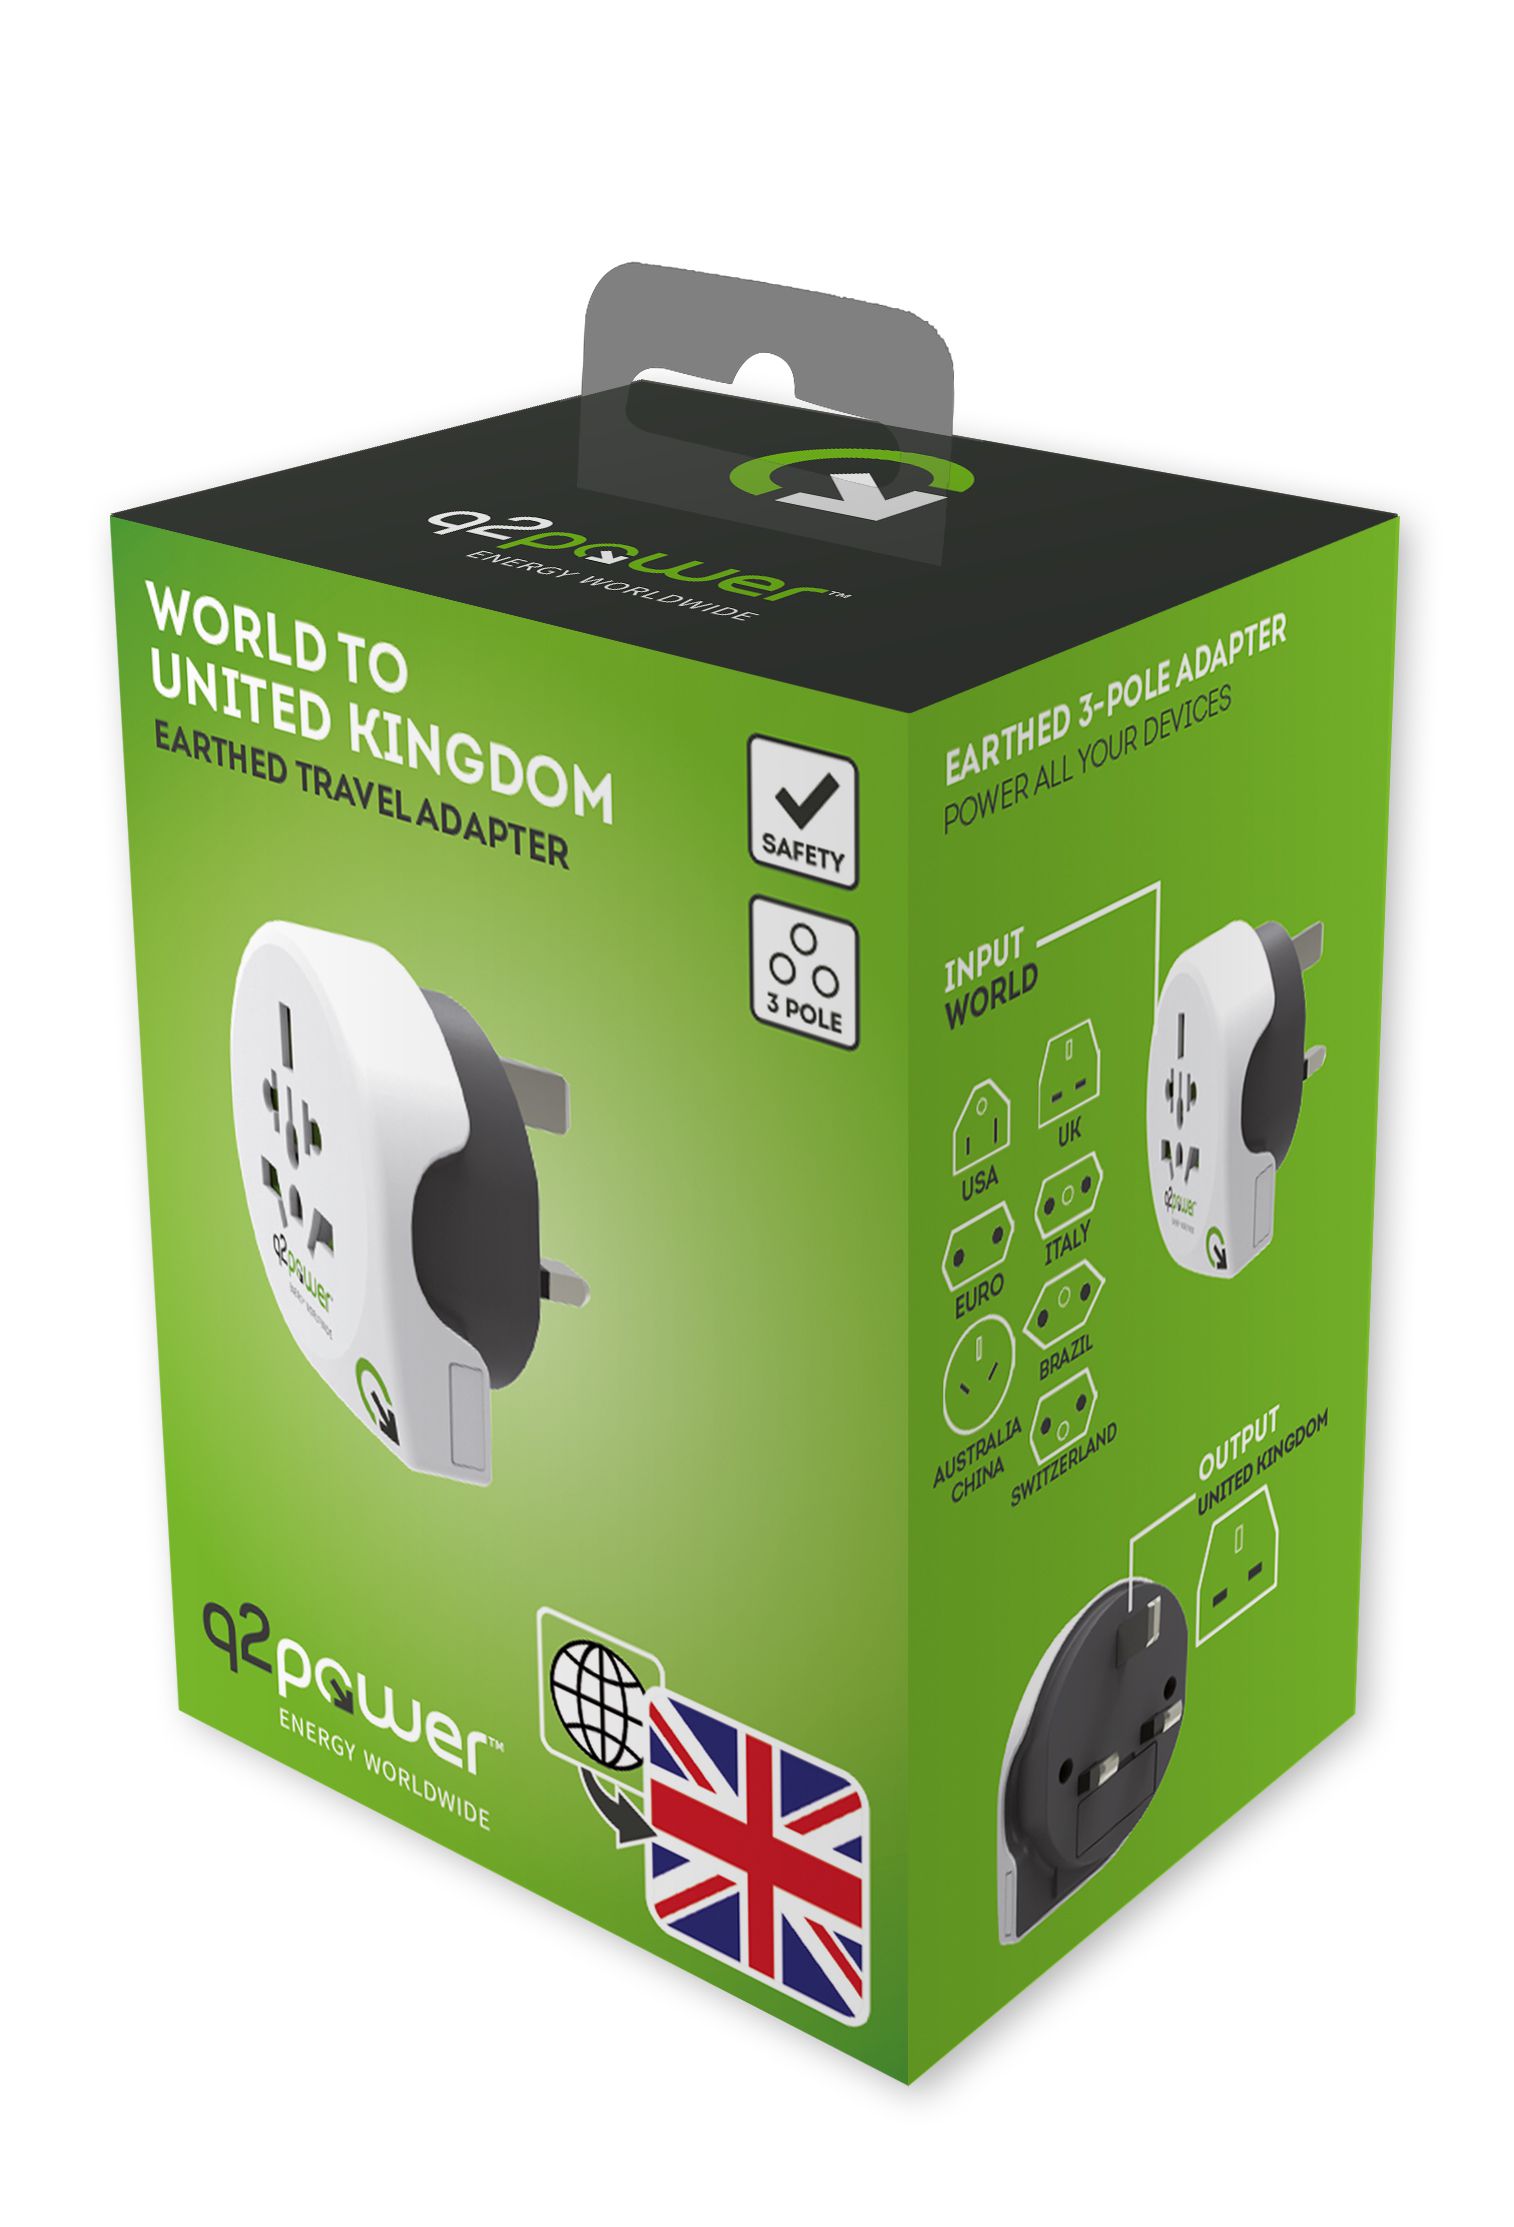 Q2 Power Welt Adapter UK